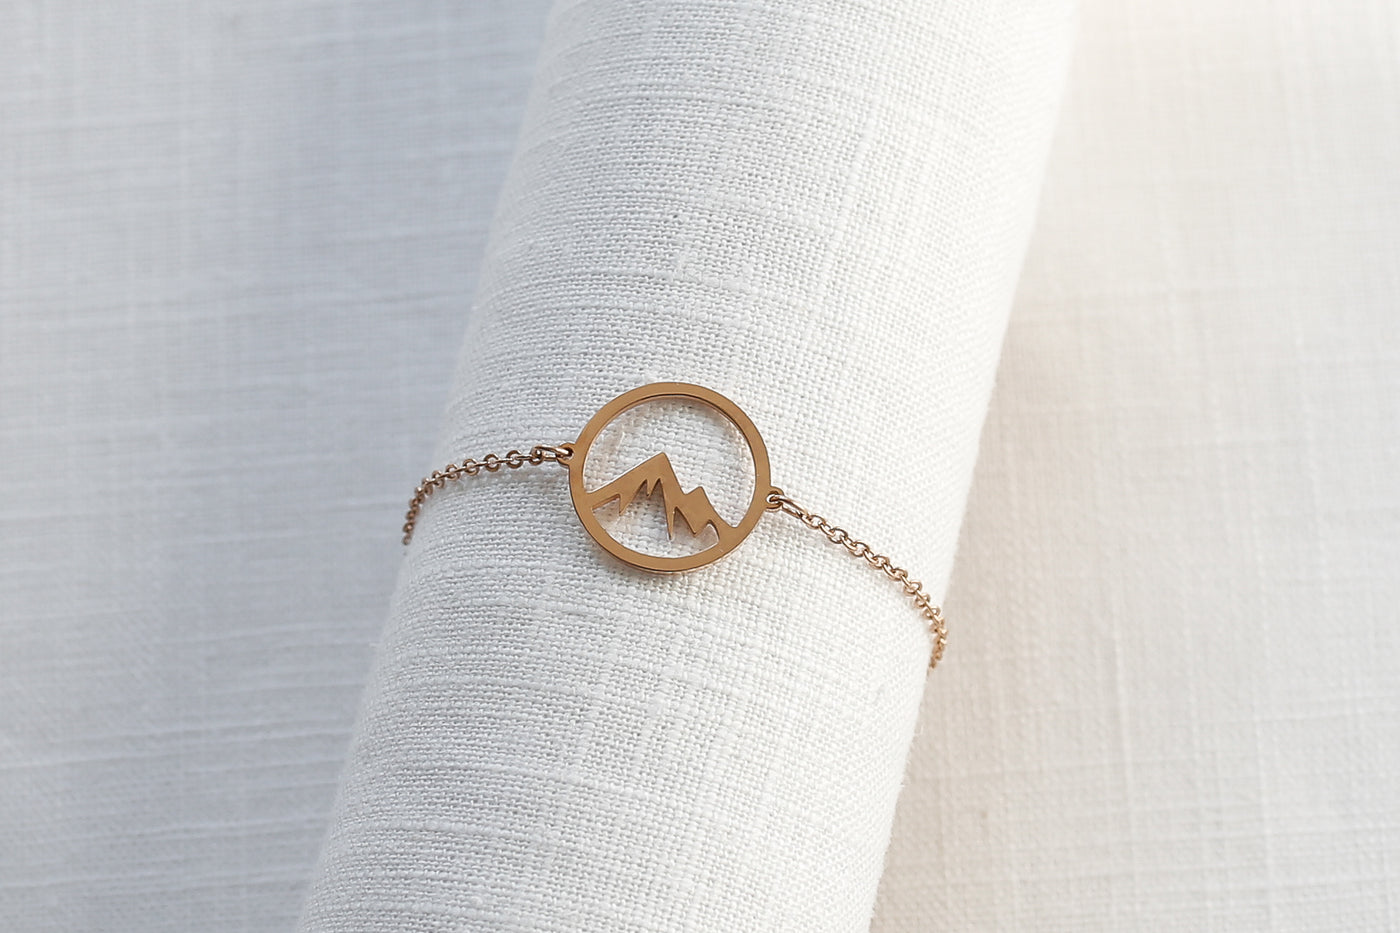 Gold Armband mit Bergspitze Anhänger aus Edelstahl auf Stoff 